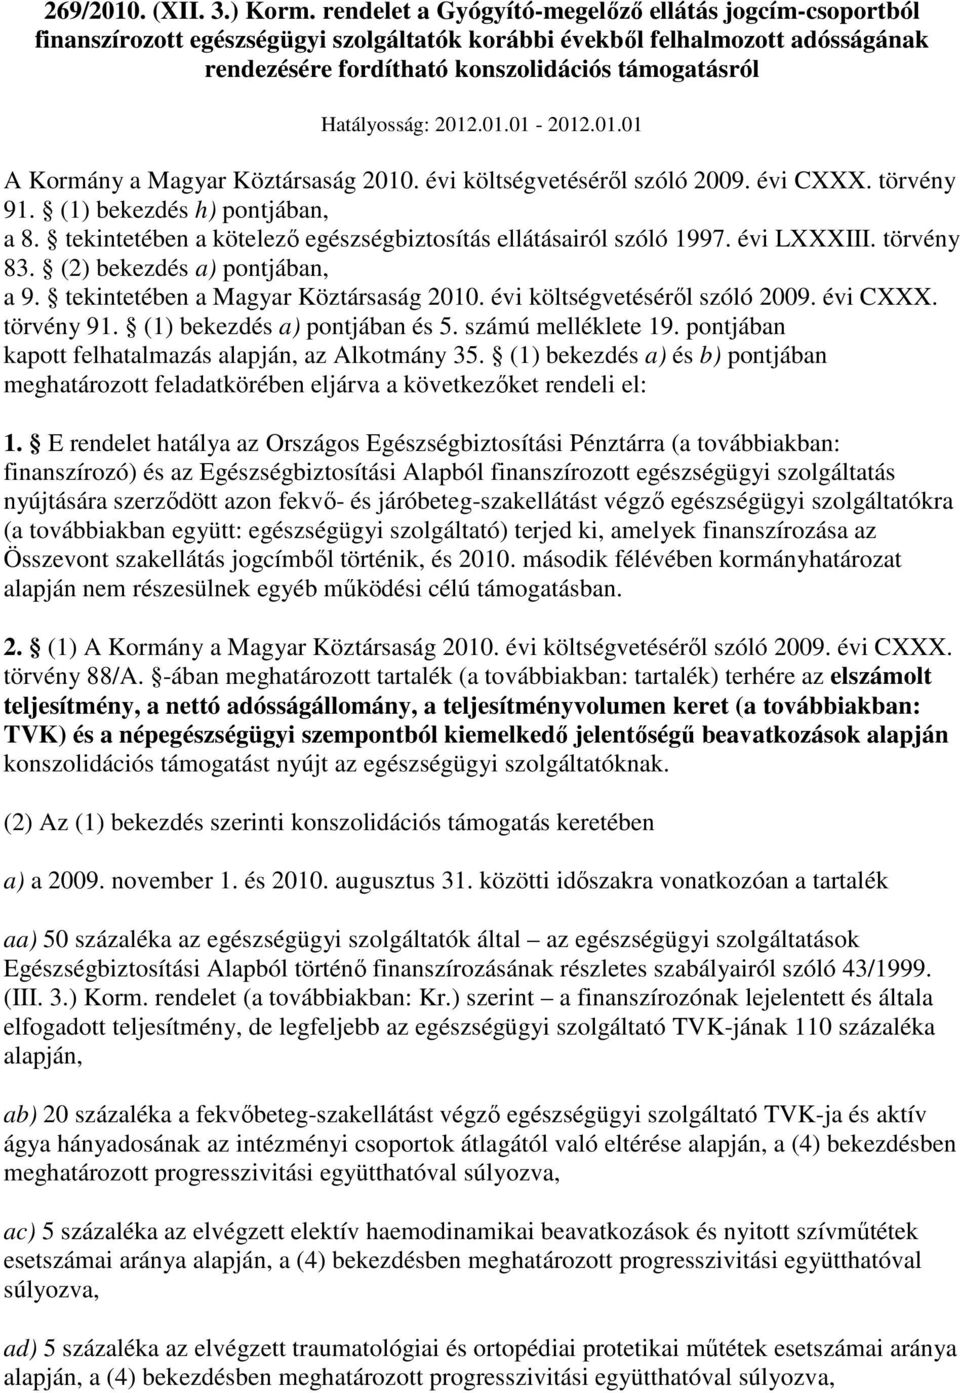 Hatályosság: 2012.01.01-2012.01.01 A Kormány a Magyar Köztársaság 2010. évi költségvetésérıl szóló 2009. évi CXXX. törvény 91. (1) bekezdés h) pontjában, a 8.